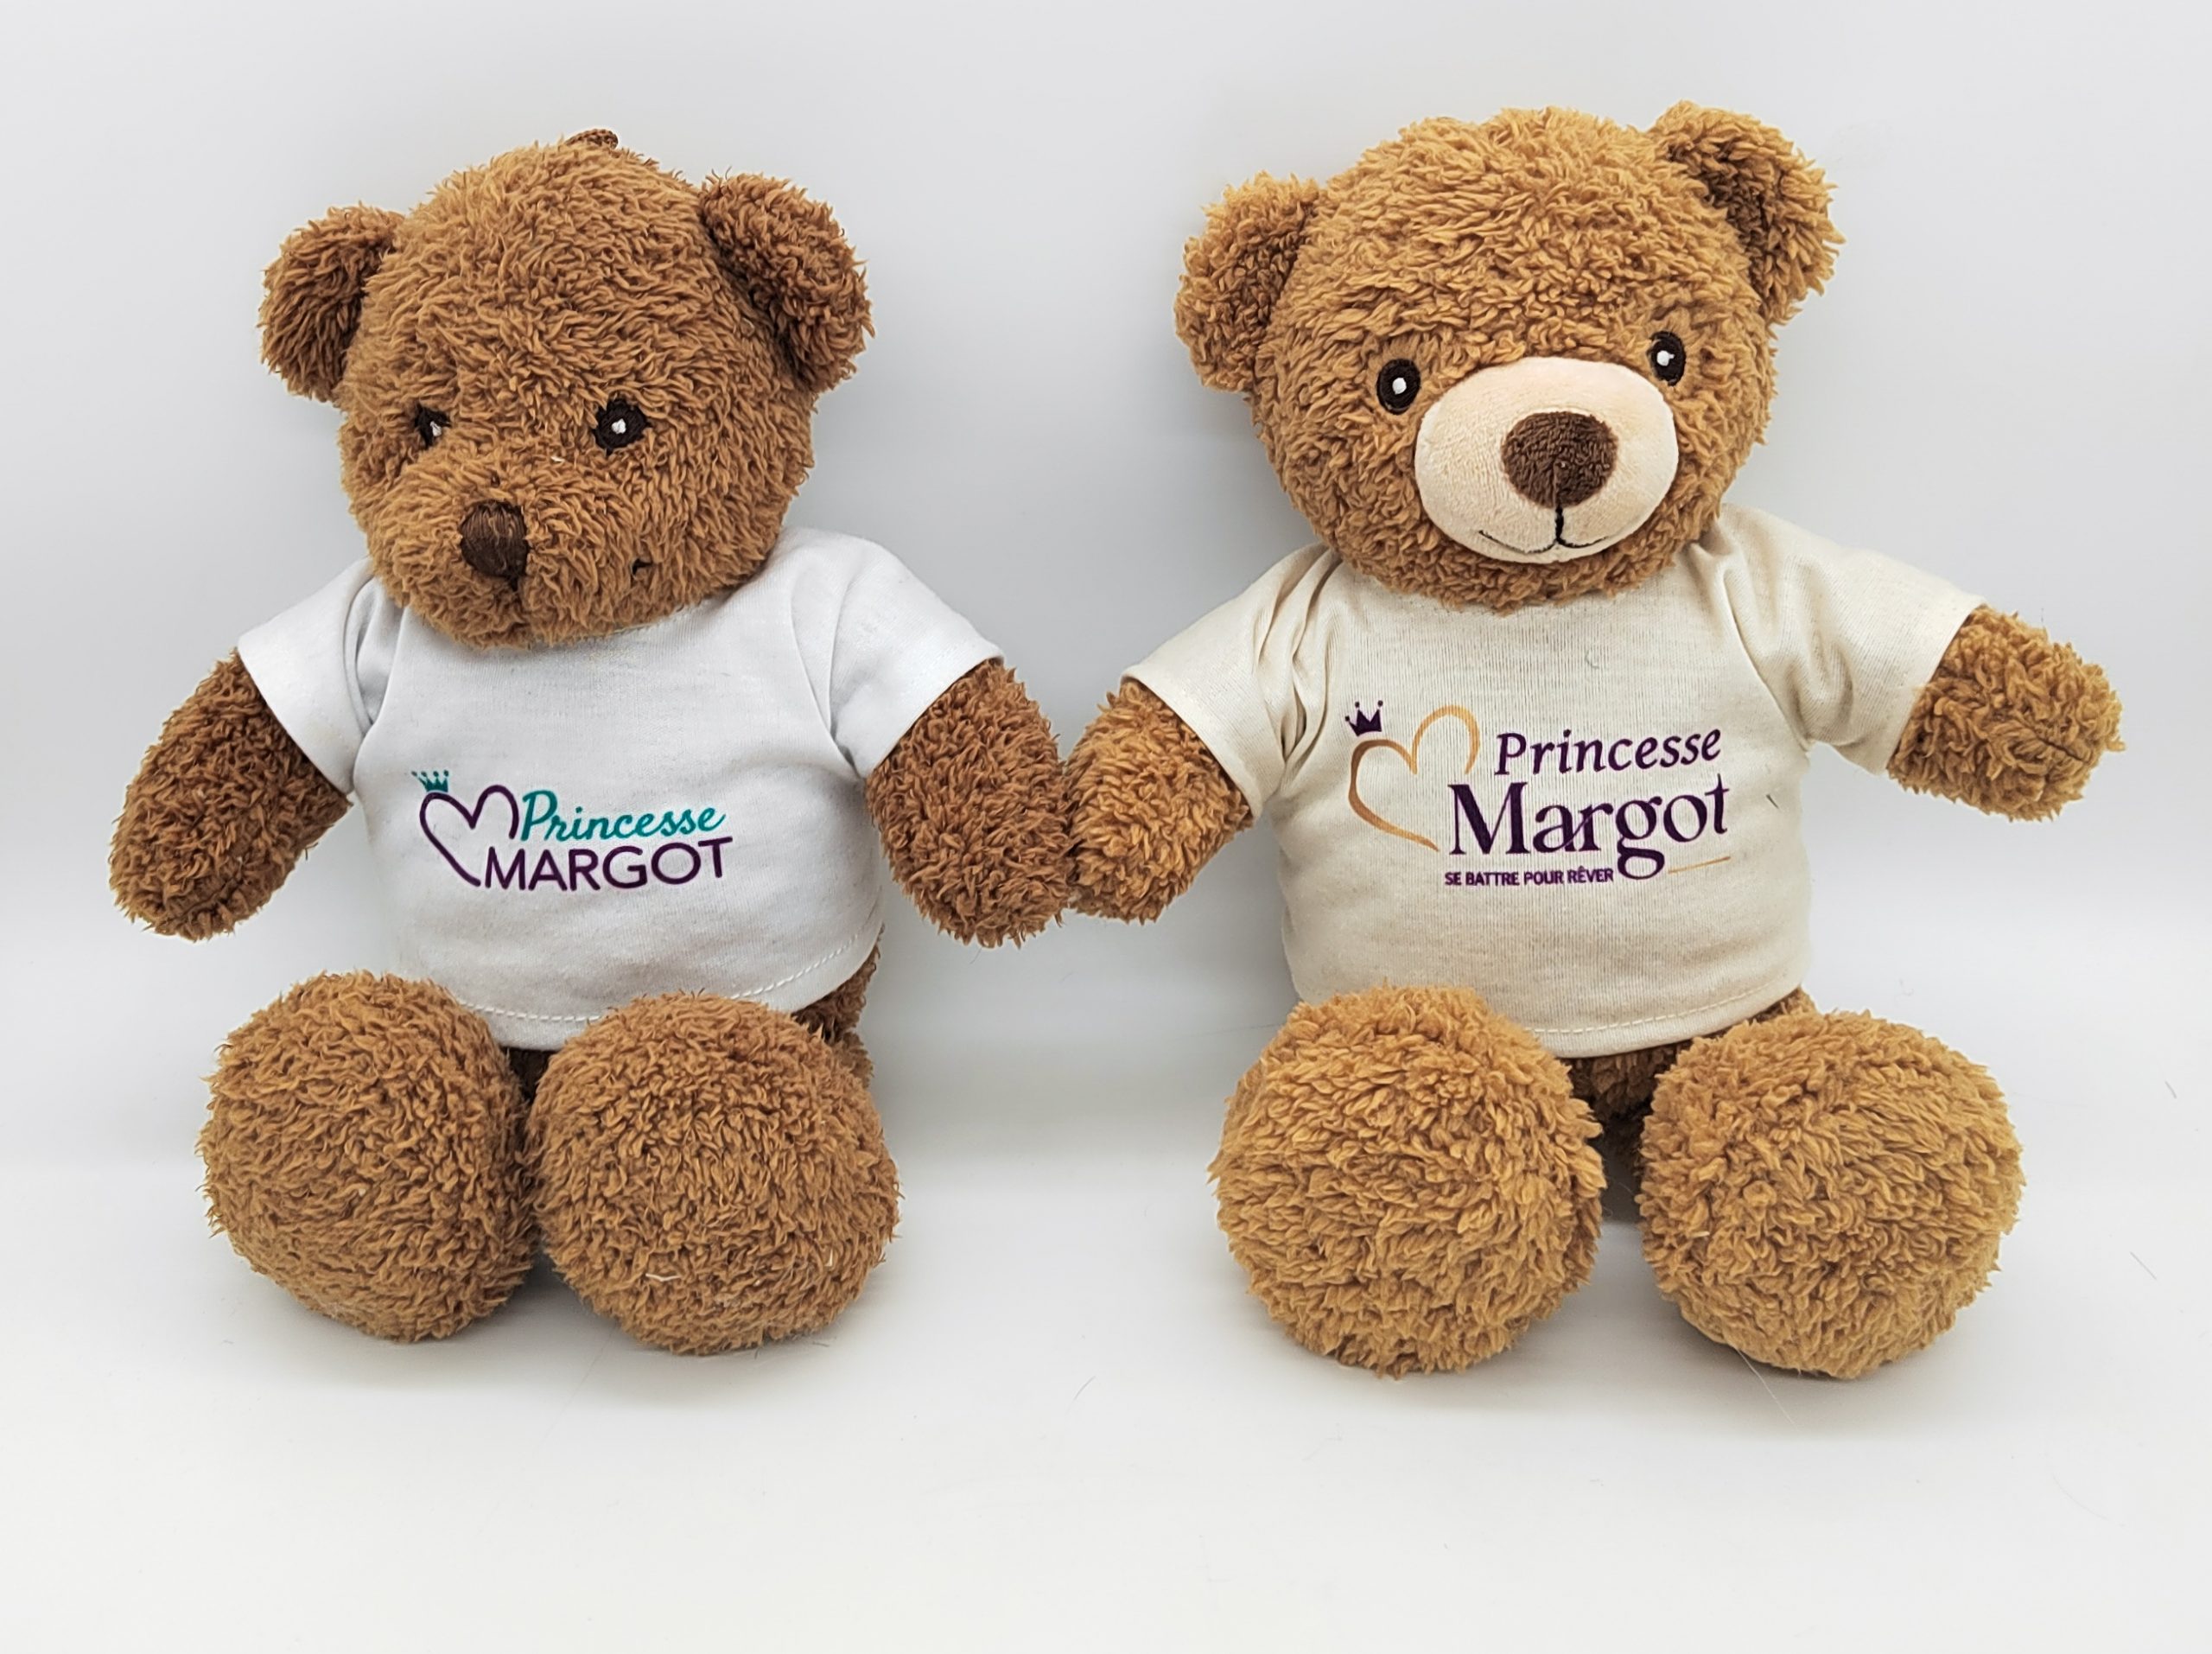 2 custom-made soft toys made for the Princess Margot association 